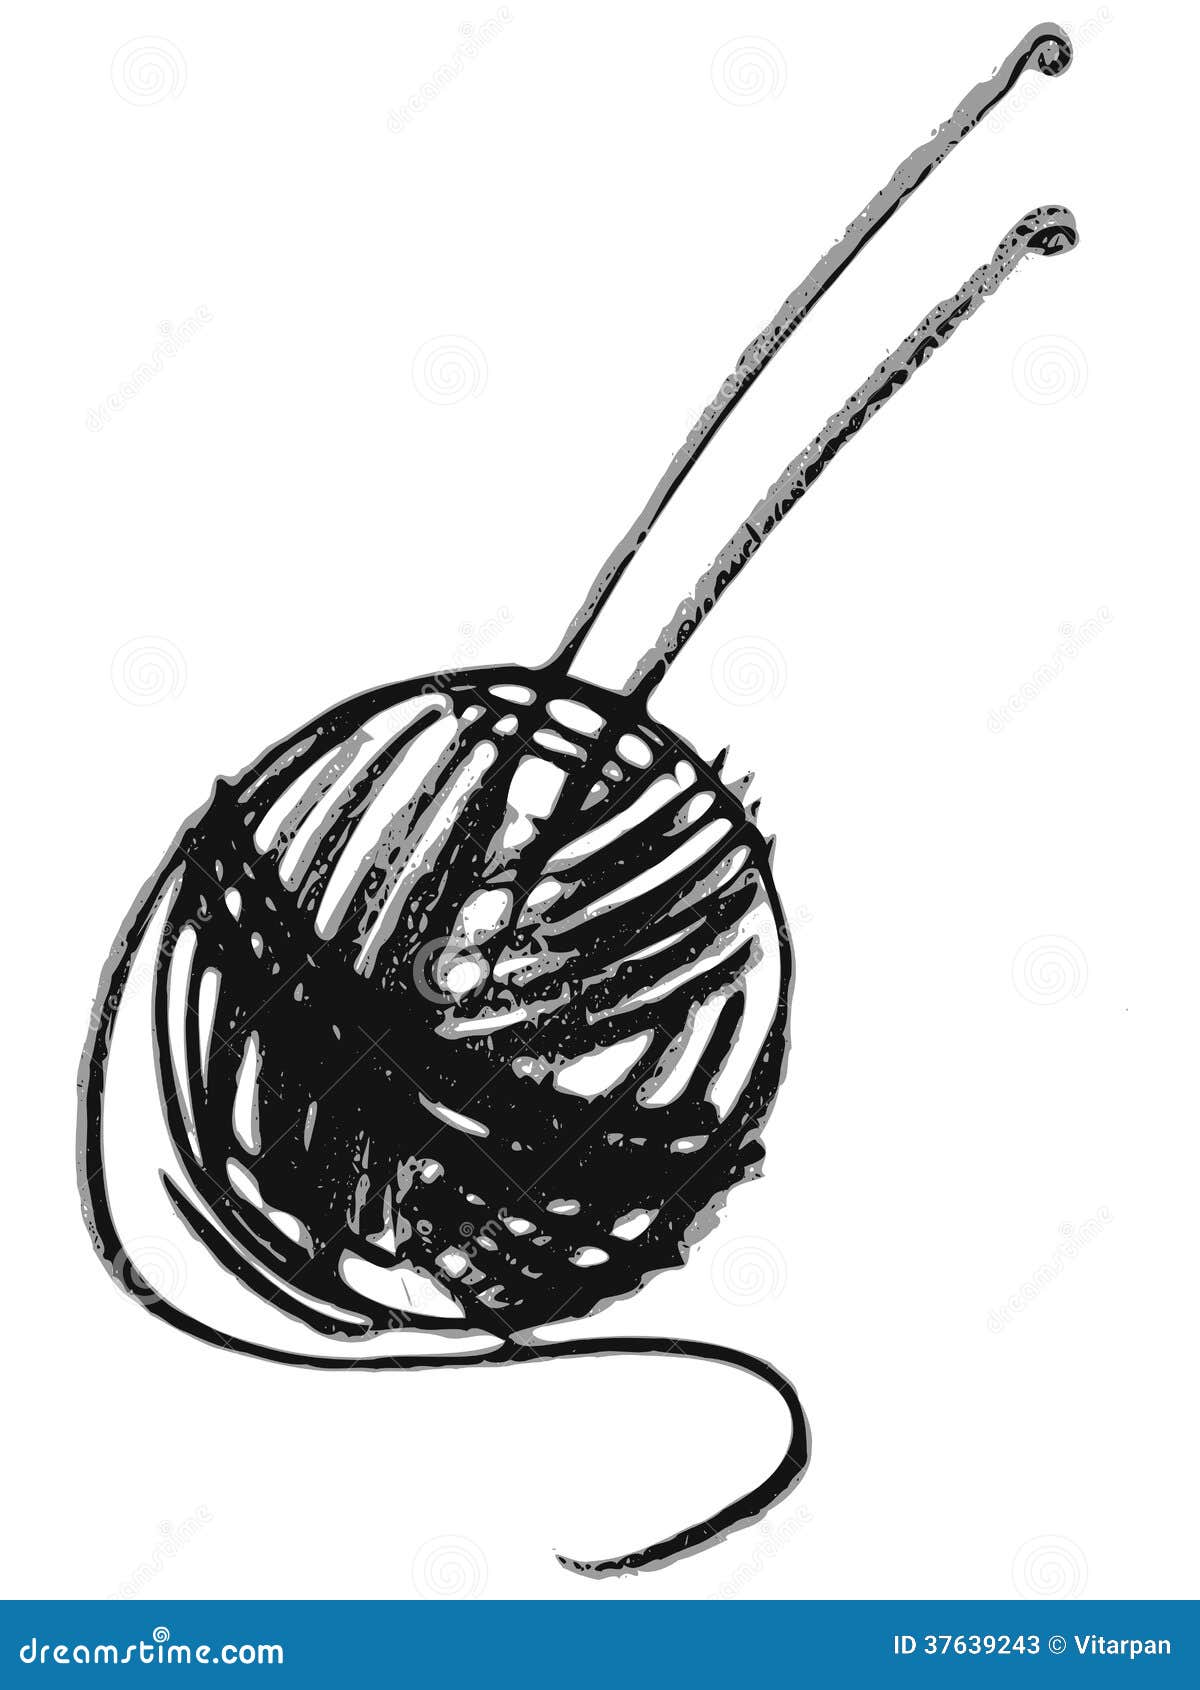 yarn and needles clip art - photo #33